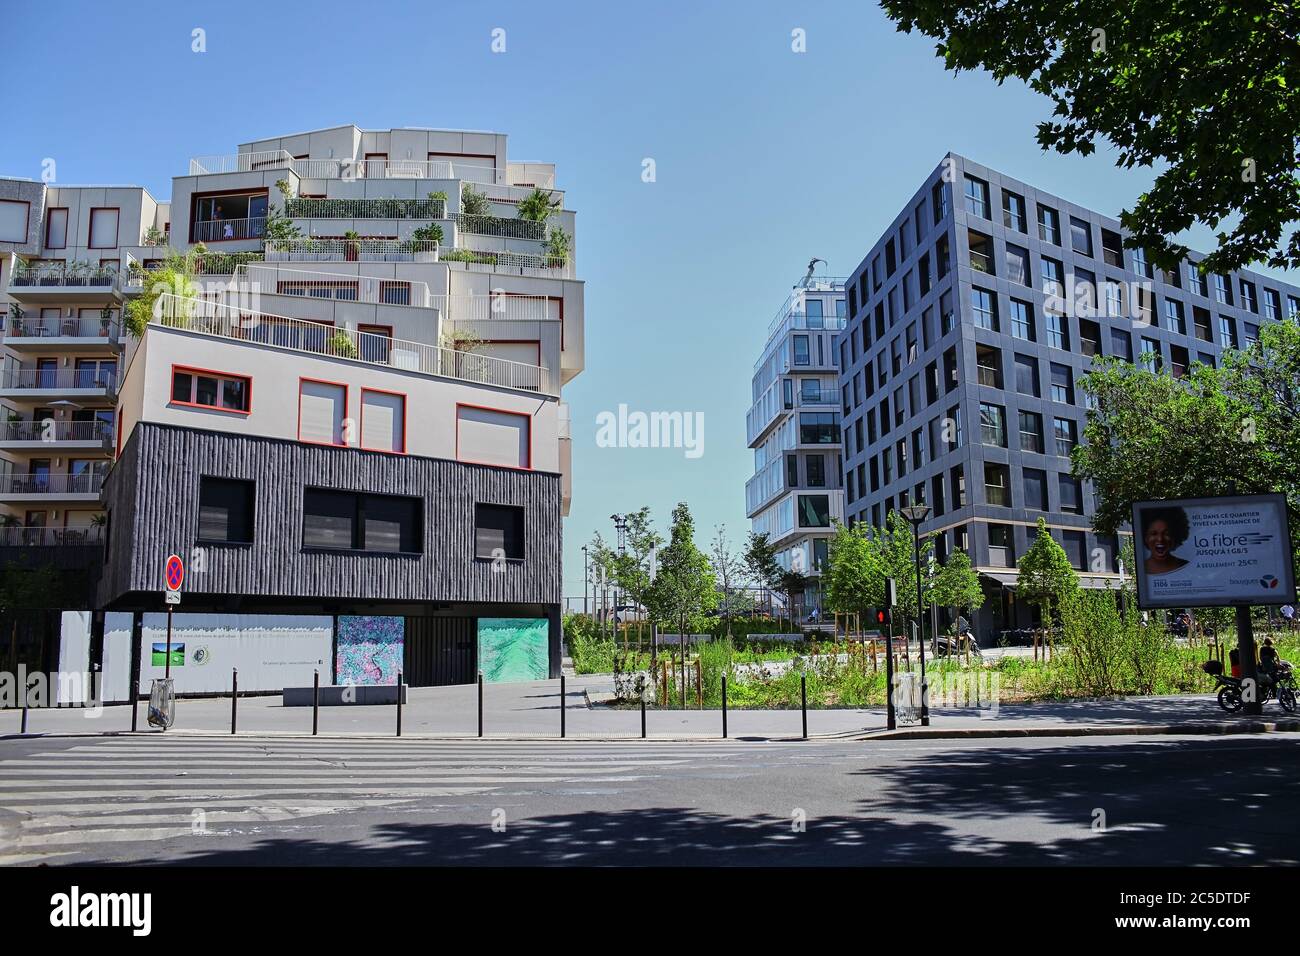 Parigi, Francia - 28 giugno 2015: Eco-quartier Clichy-Batignolles. Nuova architettura moderna. Cielo blu. Estate giorno di sole Foto Stock